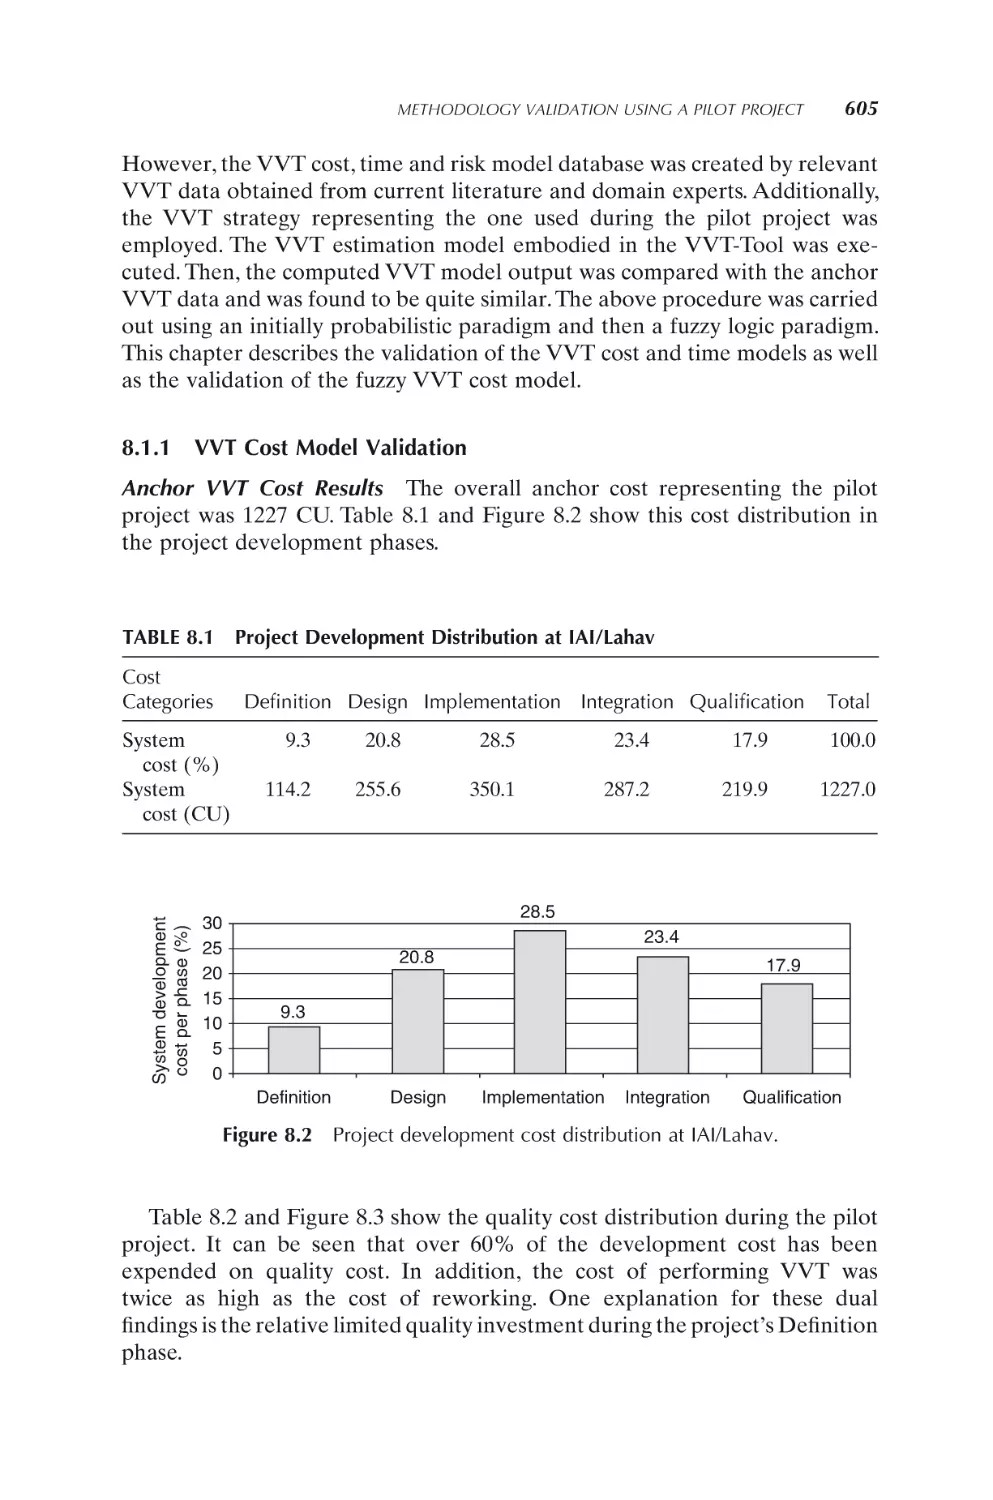 8.1.1 VVT Cost Model Validation